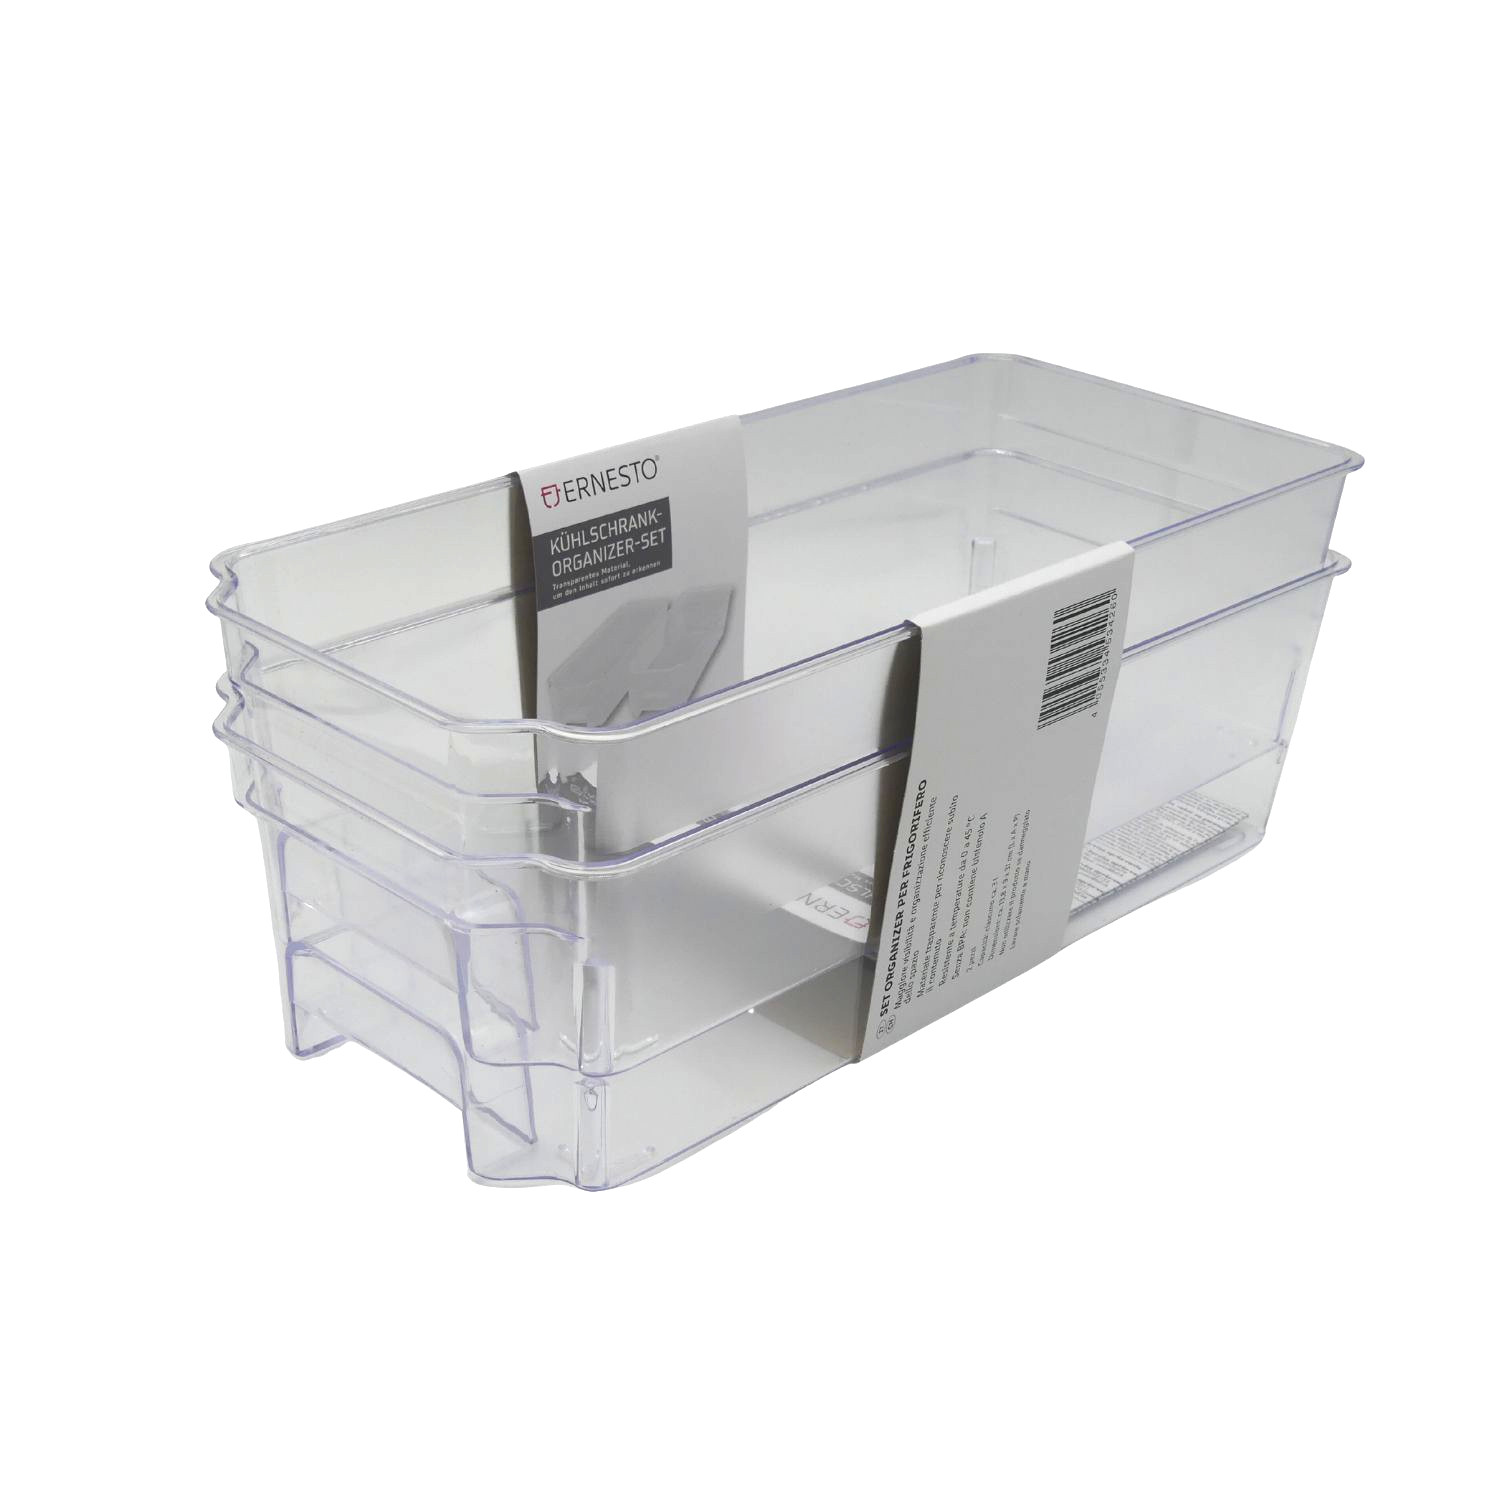 ERNESTO Kühlschrank-Organizer-Set 3 Liter transparent & Aktionen Temperaturbeständig | günstig | mehr Küche | Druckerpatronen | effizient | Drucker - Alles Übersicht kaufen! Garten Haus Ihren Haushalt für